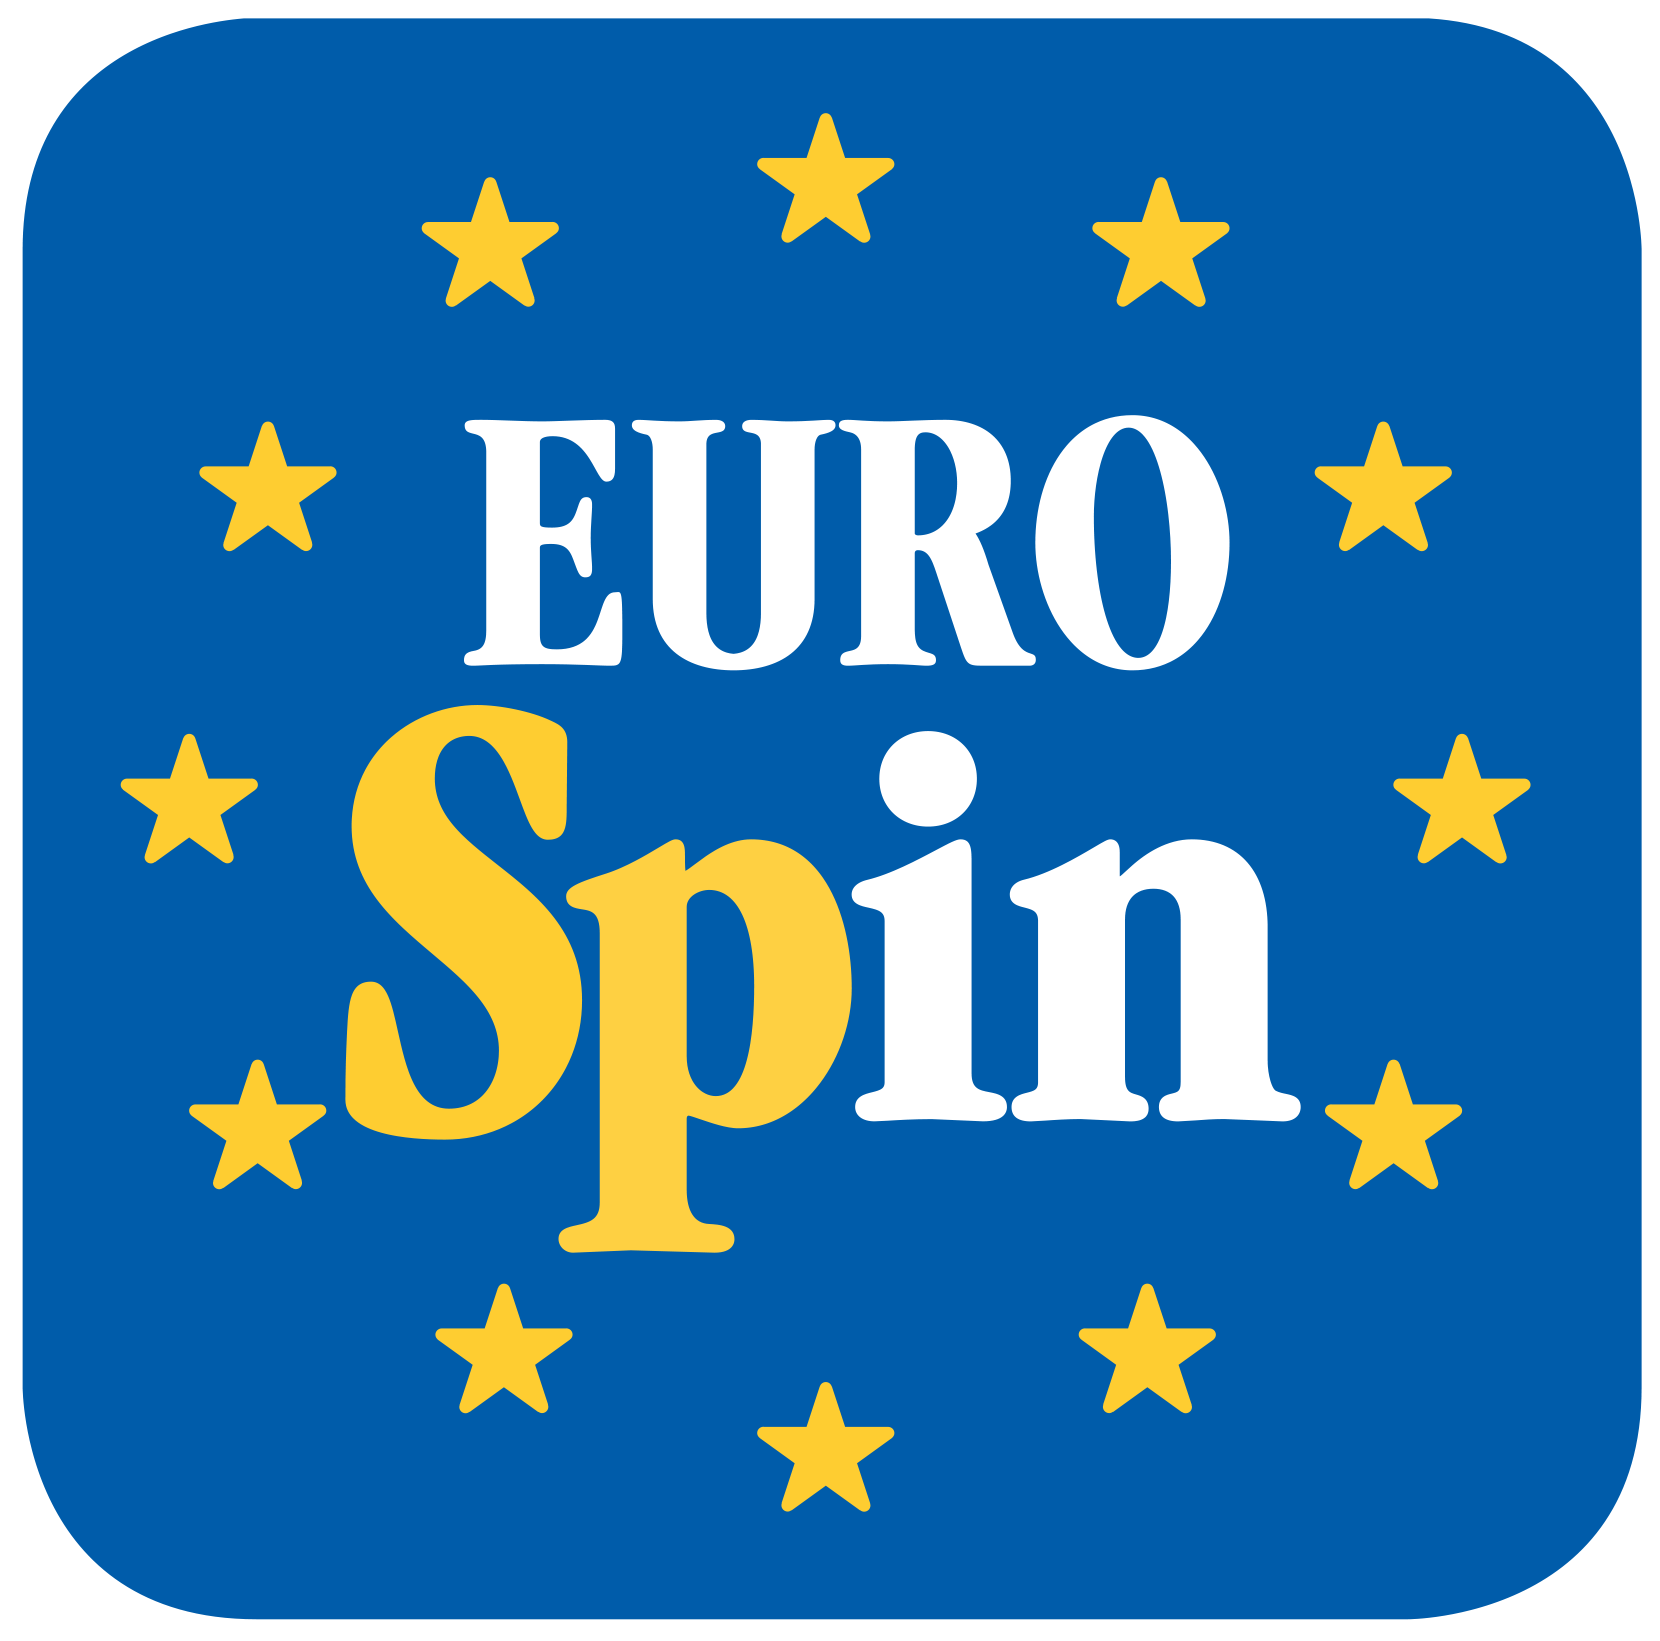 eurospin btc